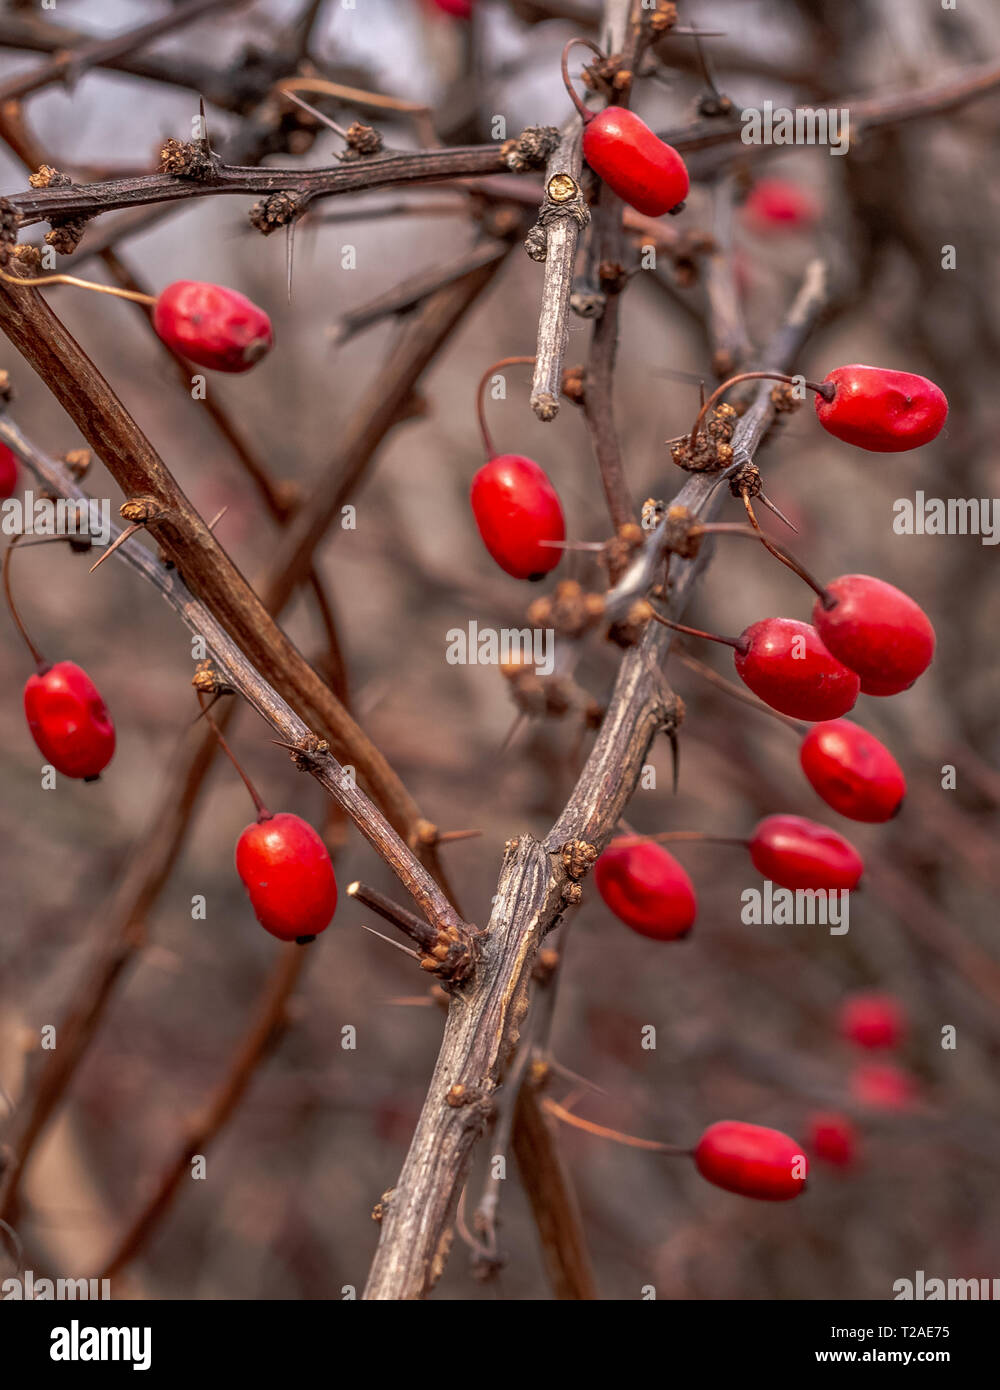 Baies comestibles rouge du célèbre arbuste de l'épine-vinette du Japon sur le figuier de branches d'épines dans la forêt d'hiver. Banque D'Images